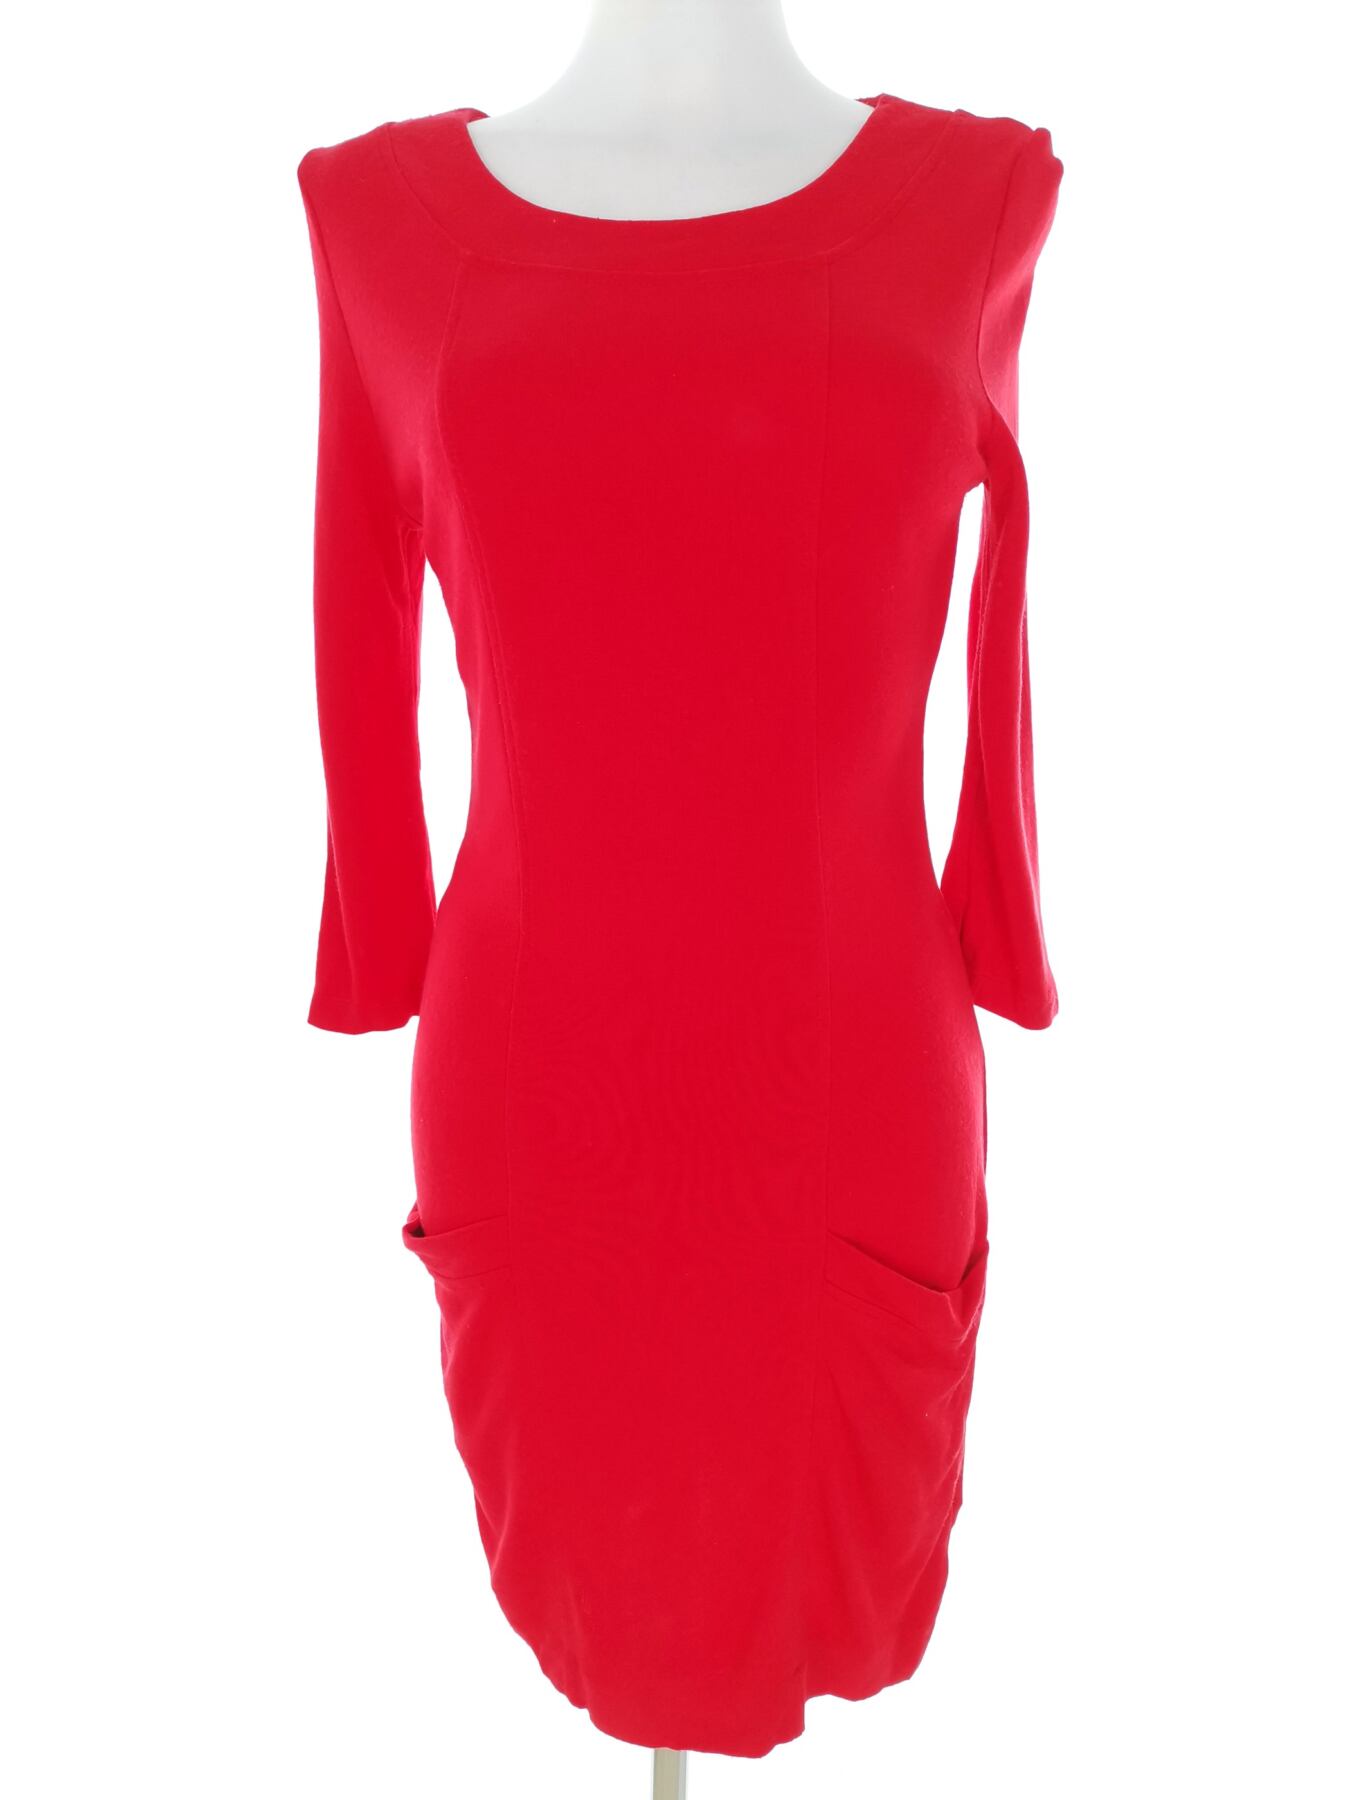 ASOS Rozmiar 10 (38) Kolor Czerwony Okrągły dekolt Sukienka Ołówkowa Rękaw 3/4 Do Kolan Materiał Wiskoza